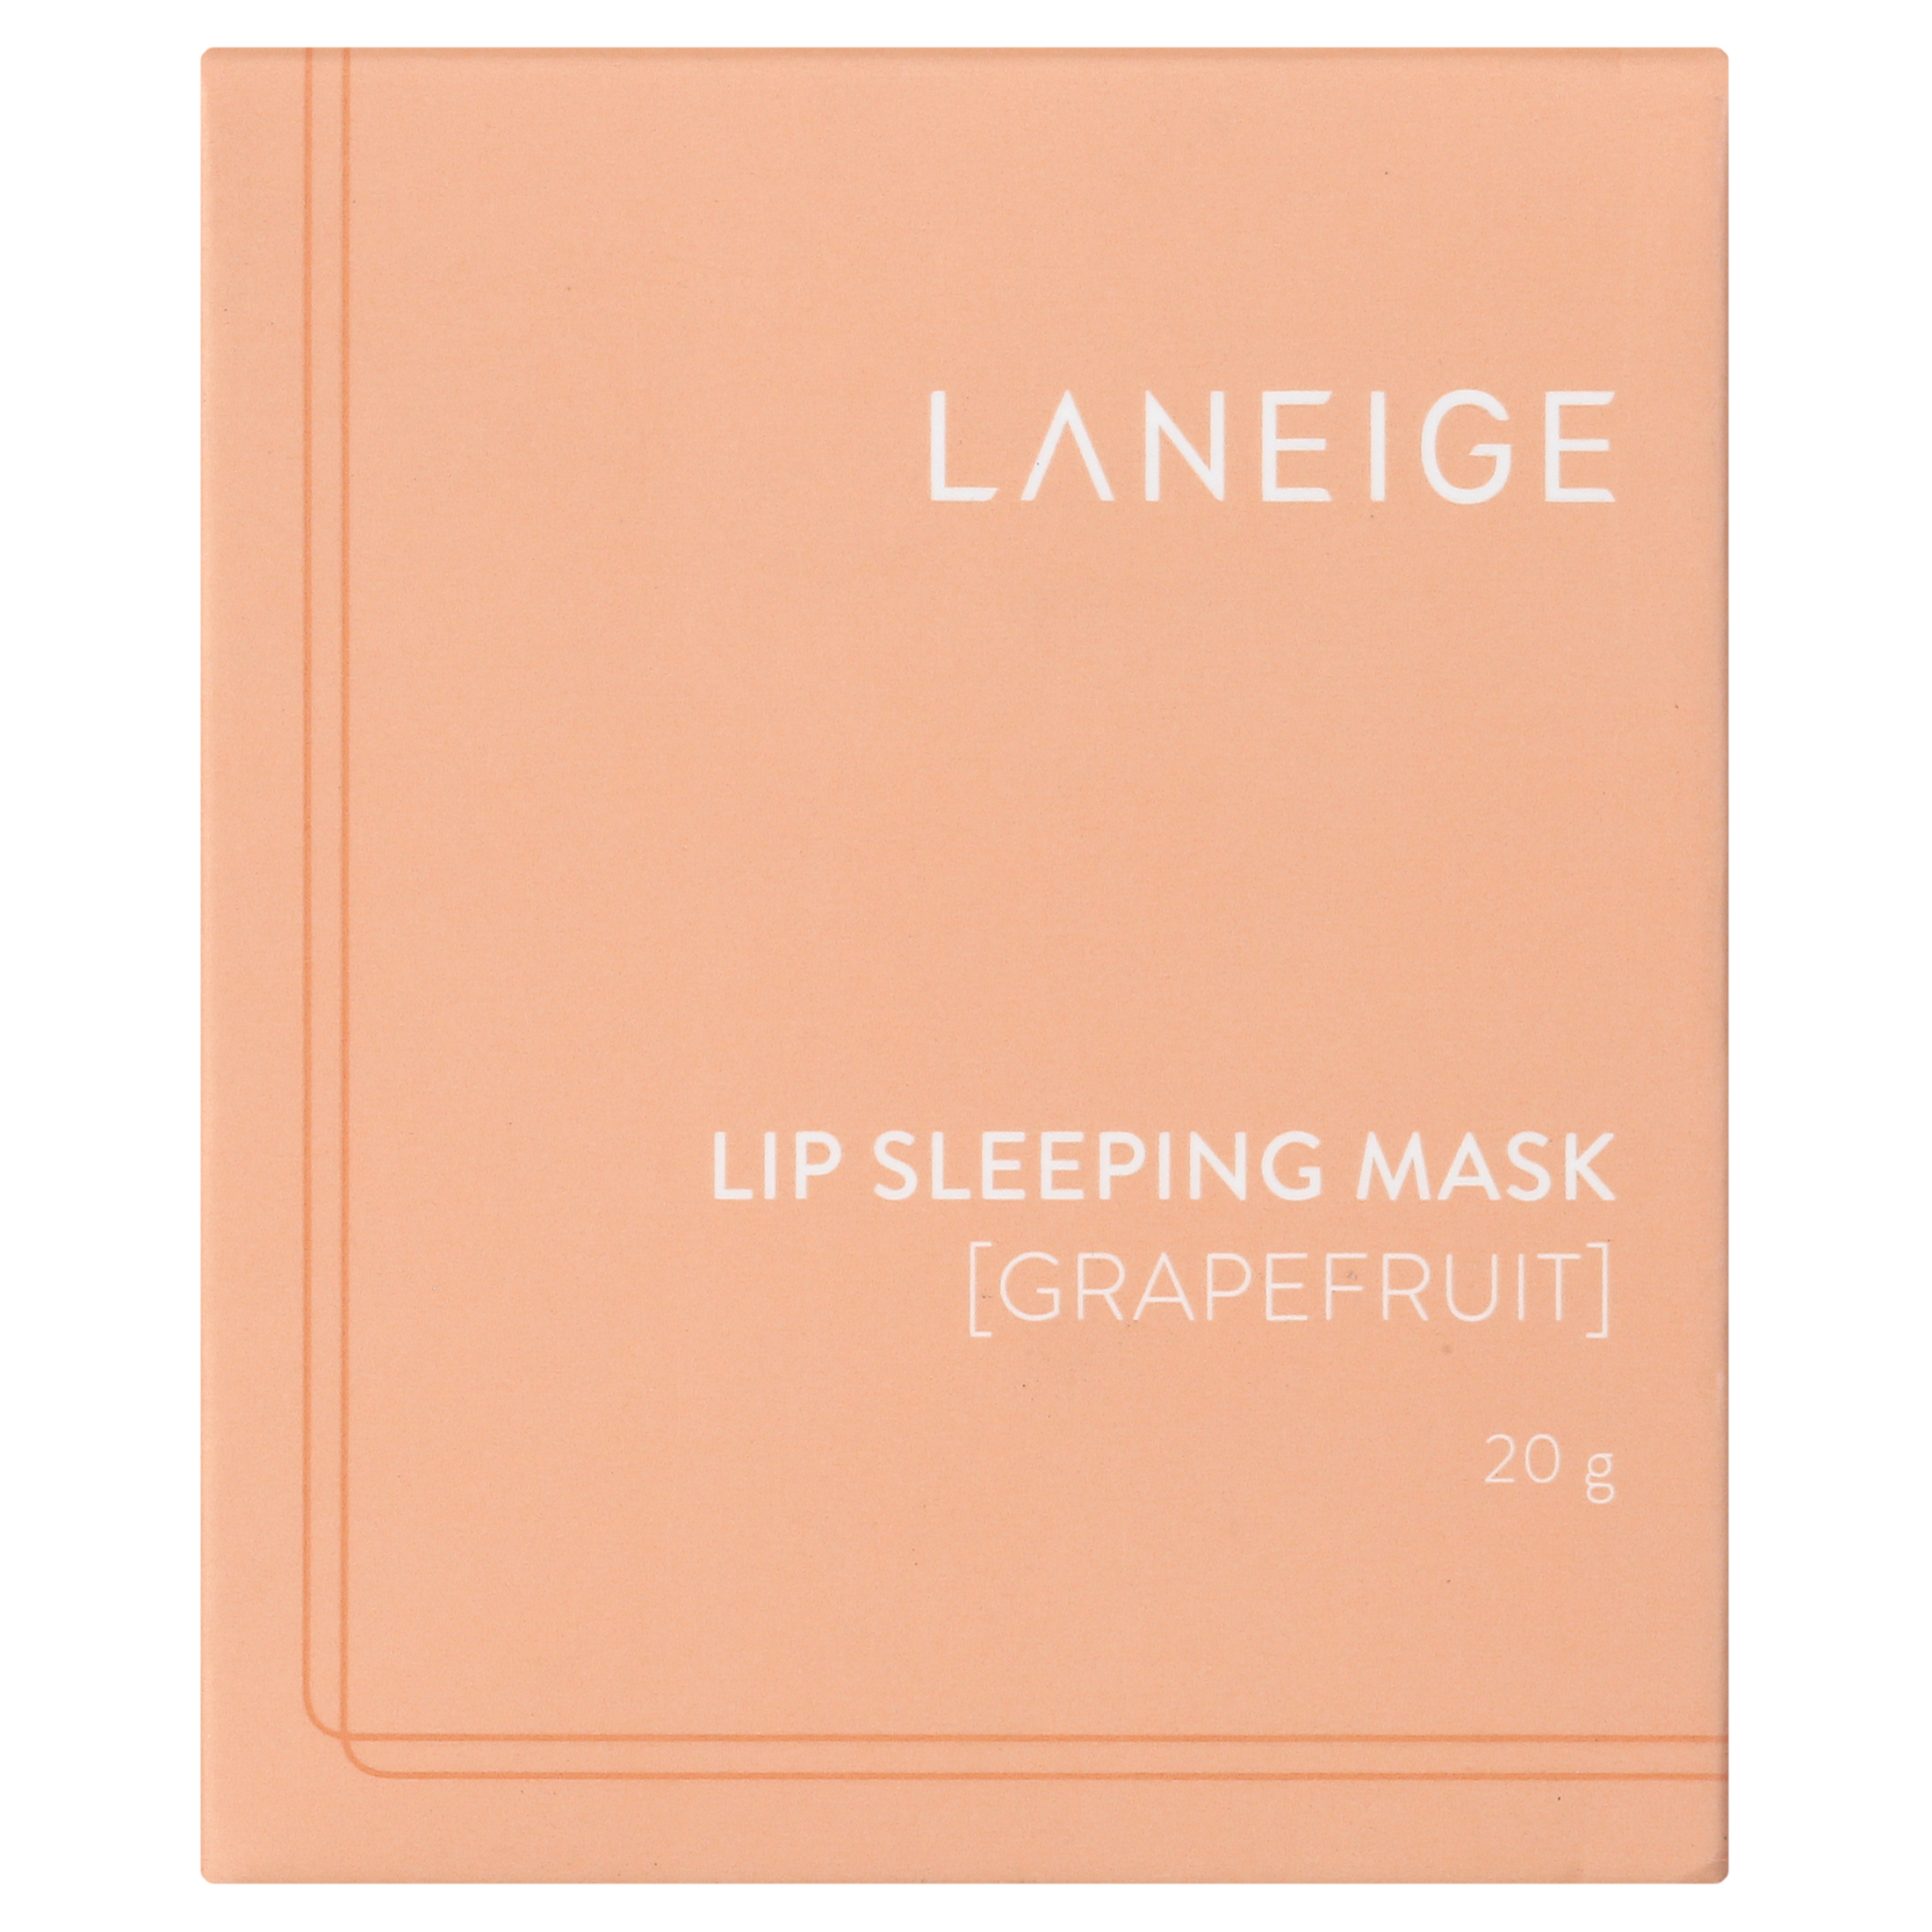 Laneige Lip Sleeping Mask Grapefruit 20g - image 3 of 6